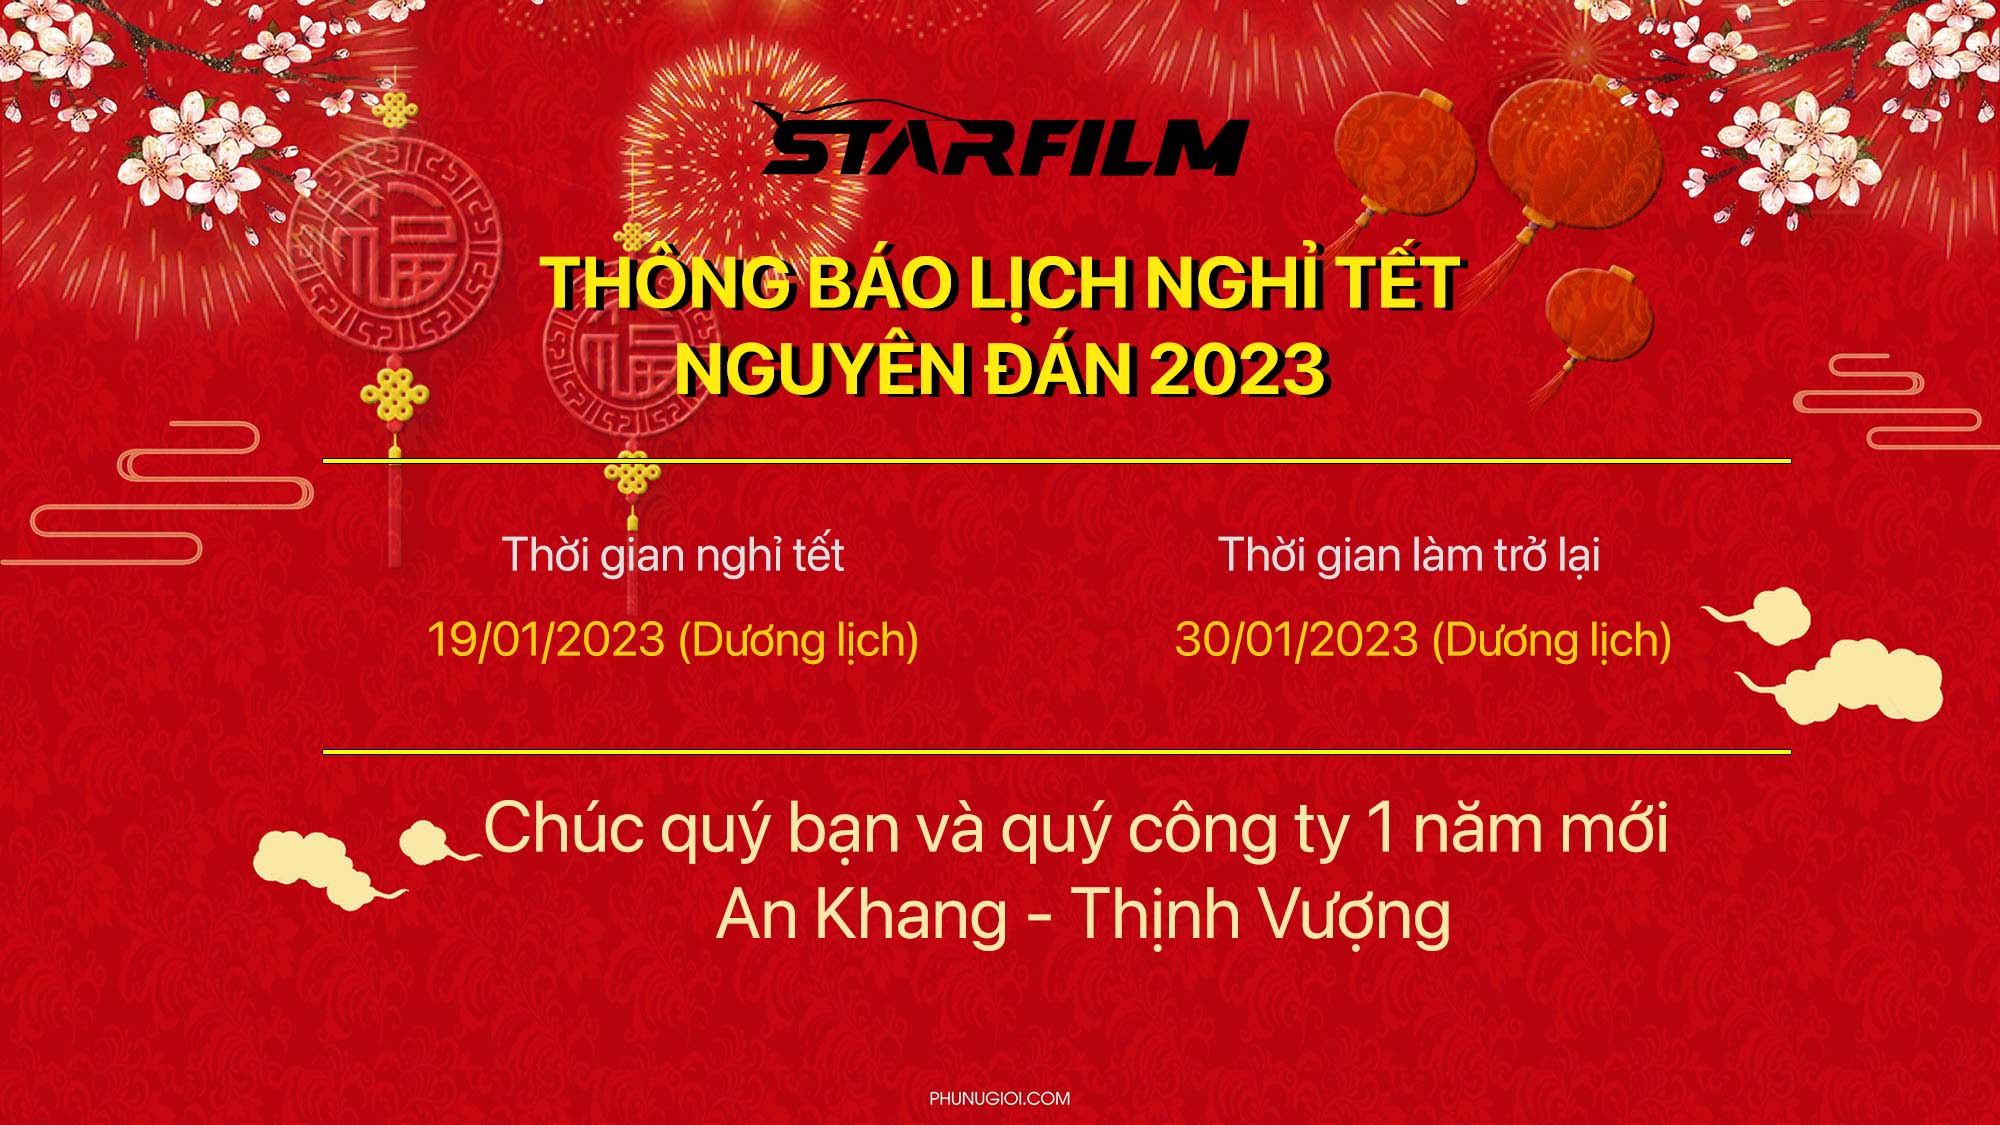 Thông báo lịch nghỉ tết nguyên đán 2023 STARFILM